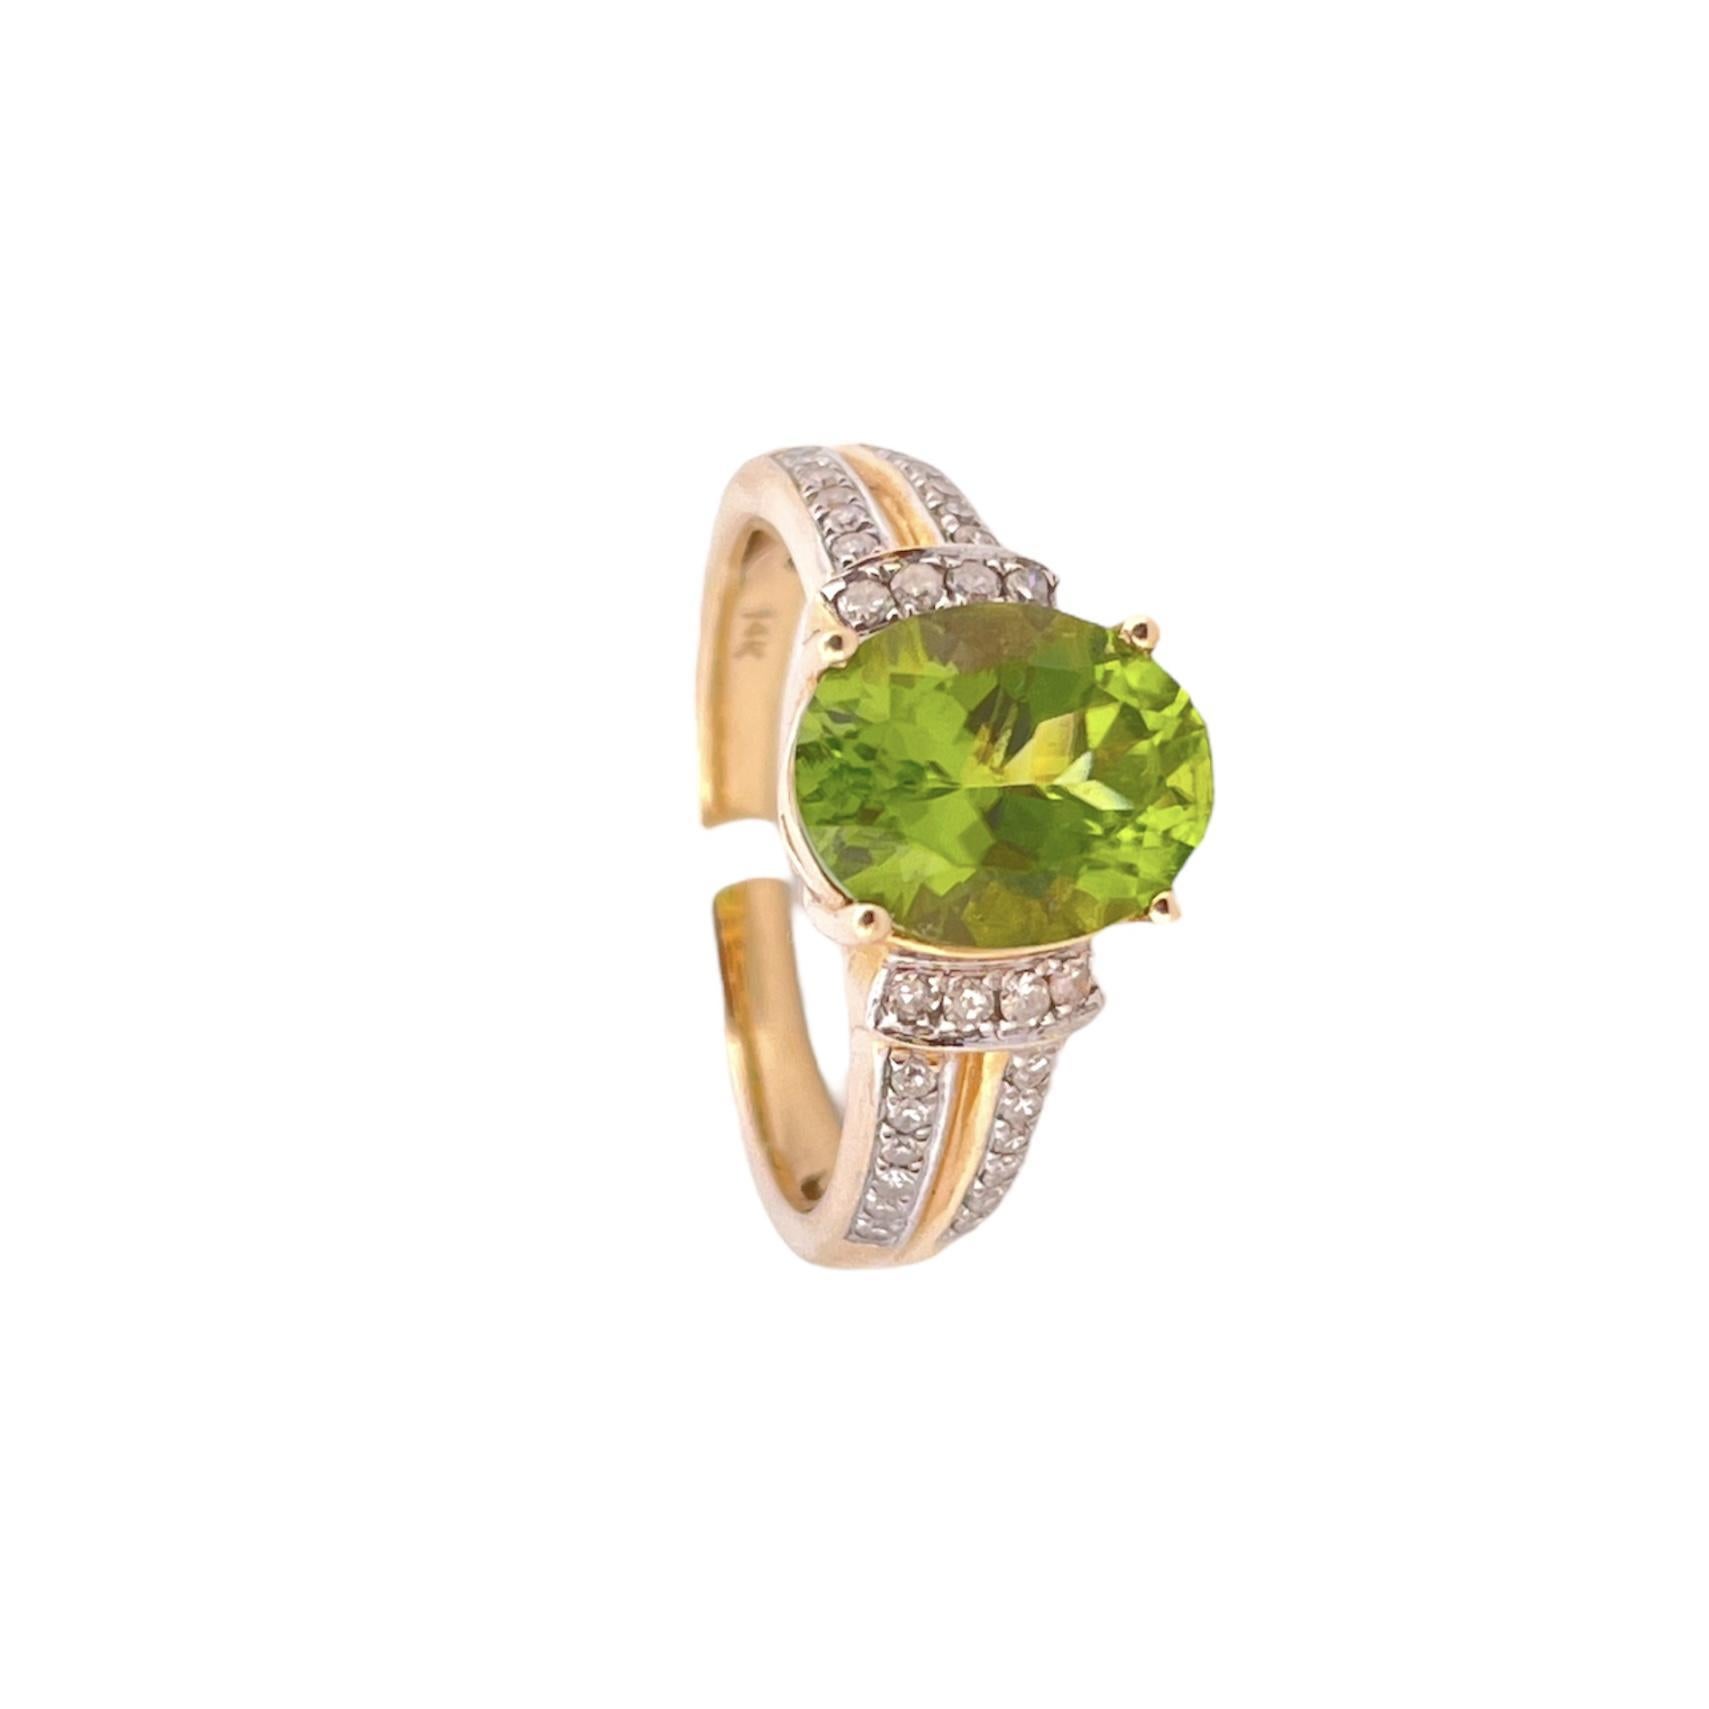 Erhöhen Sie Ihre Schmucksammlung mit diesem exquisiten Oval Peridot Ring, der einen atemberaubenden ovalen Peridot-Edelstein und funkelnde Diamantakzente mit einem Gesamtkaratgewicht (TCW) von 0,40 aufweist. Dieser aus luxuriösem 14-karätigem